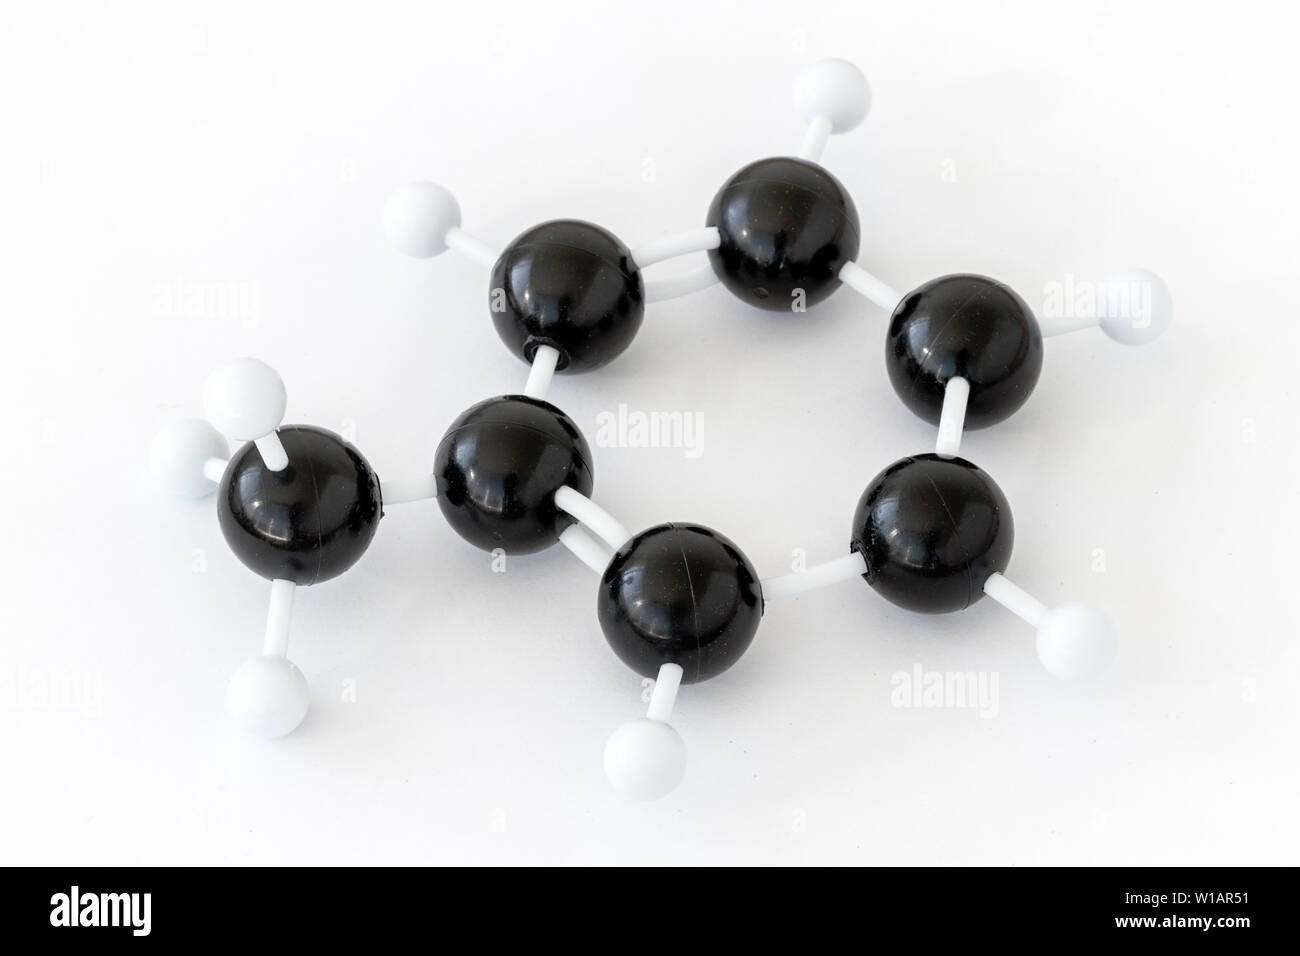 Modèle en plastique à bille et bâton d'une molécule de toluène ou de méthylbenzène (C7H8), avec structure de kékule sur fond blanc. Groupe méthyle gauche. Banque D'Images